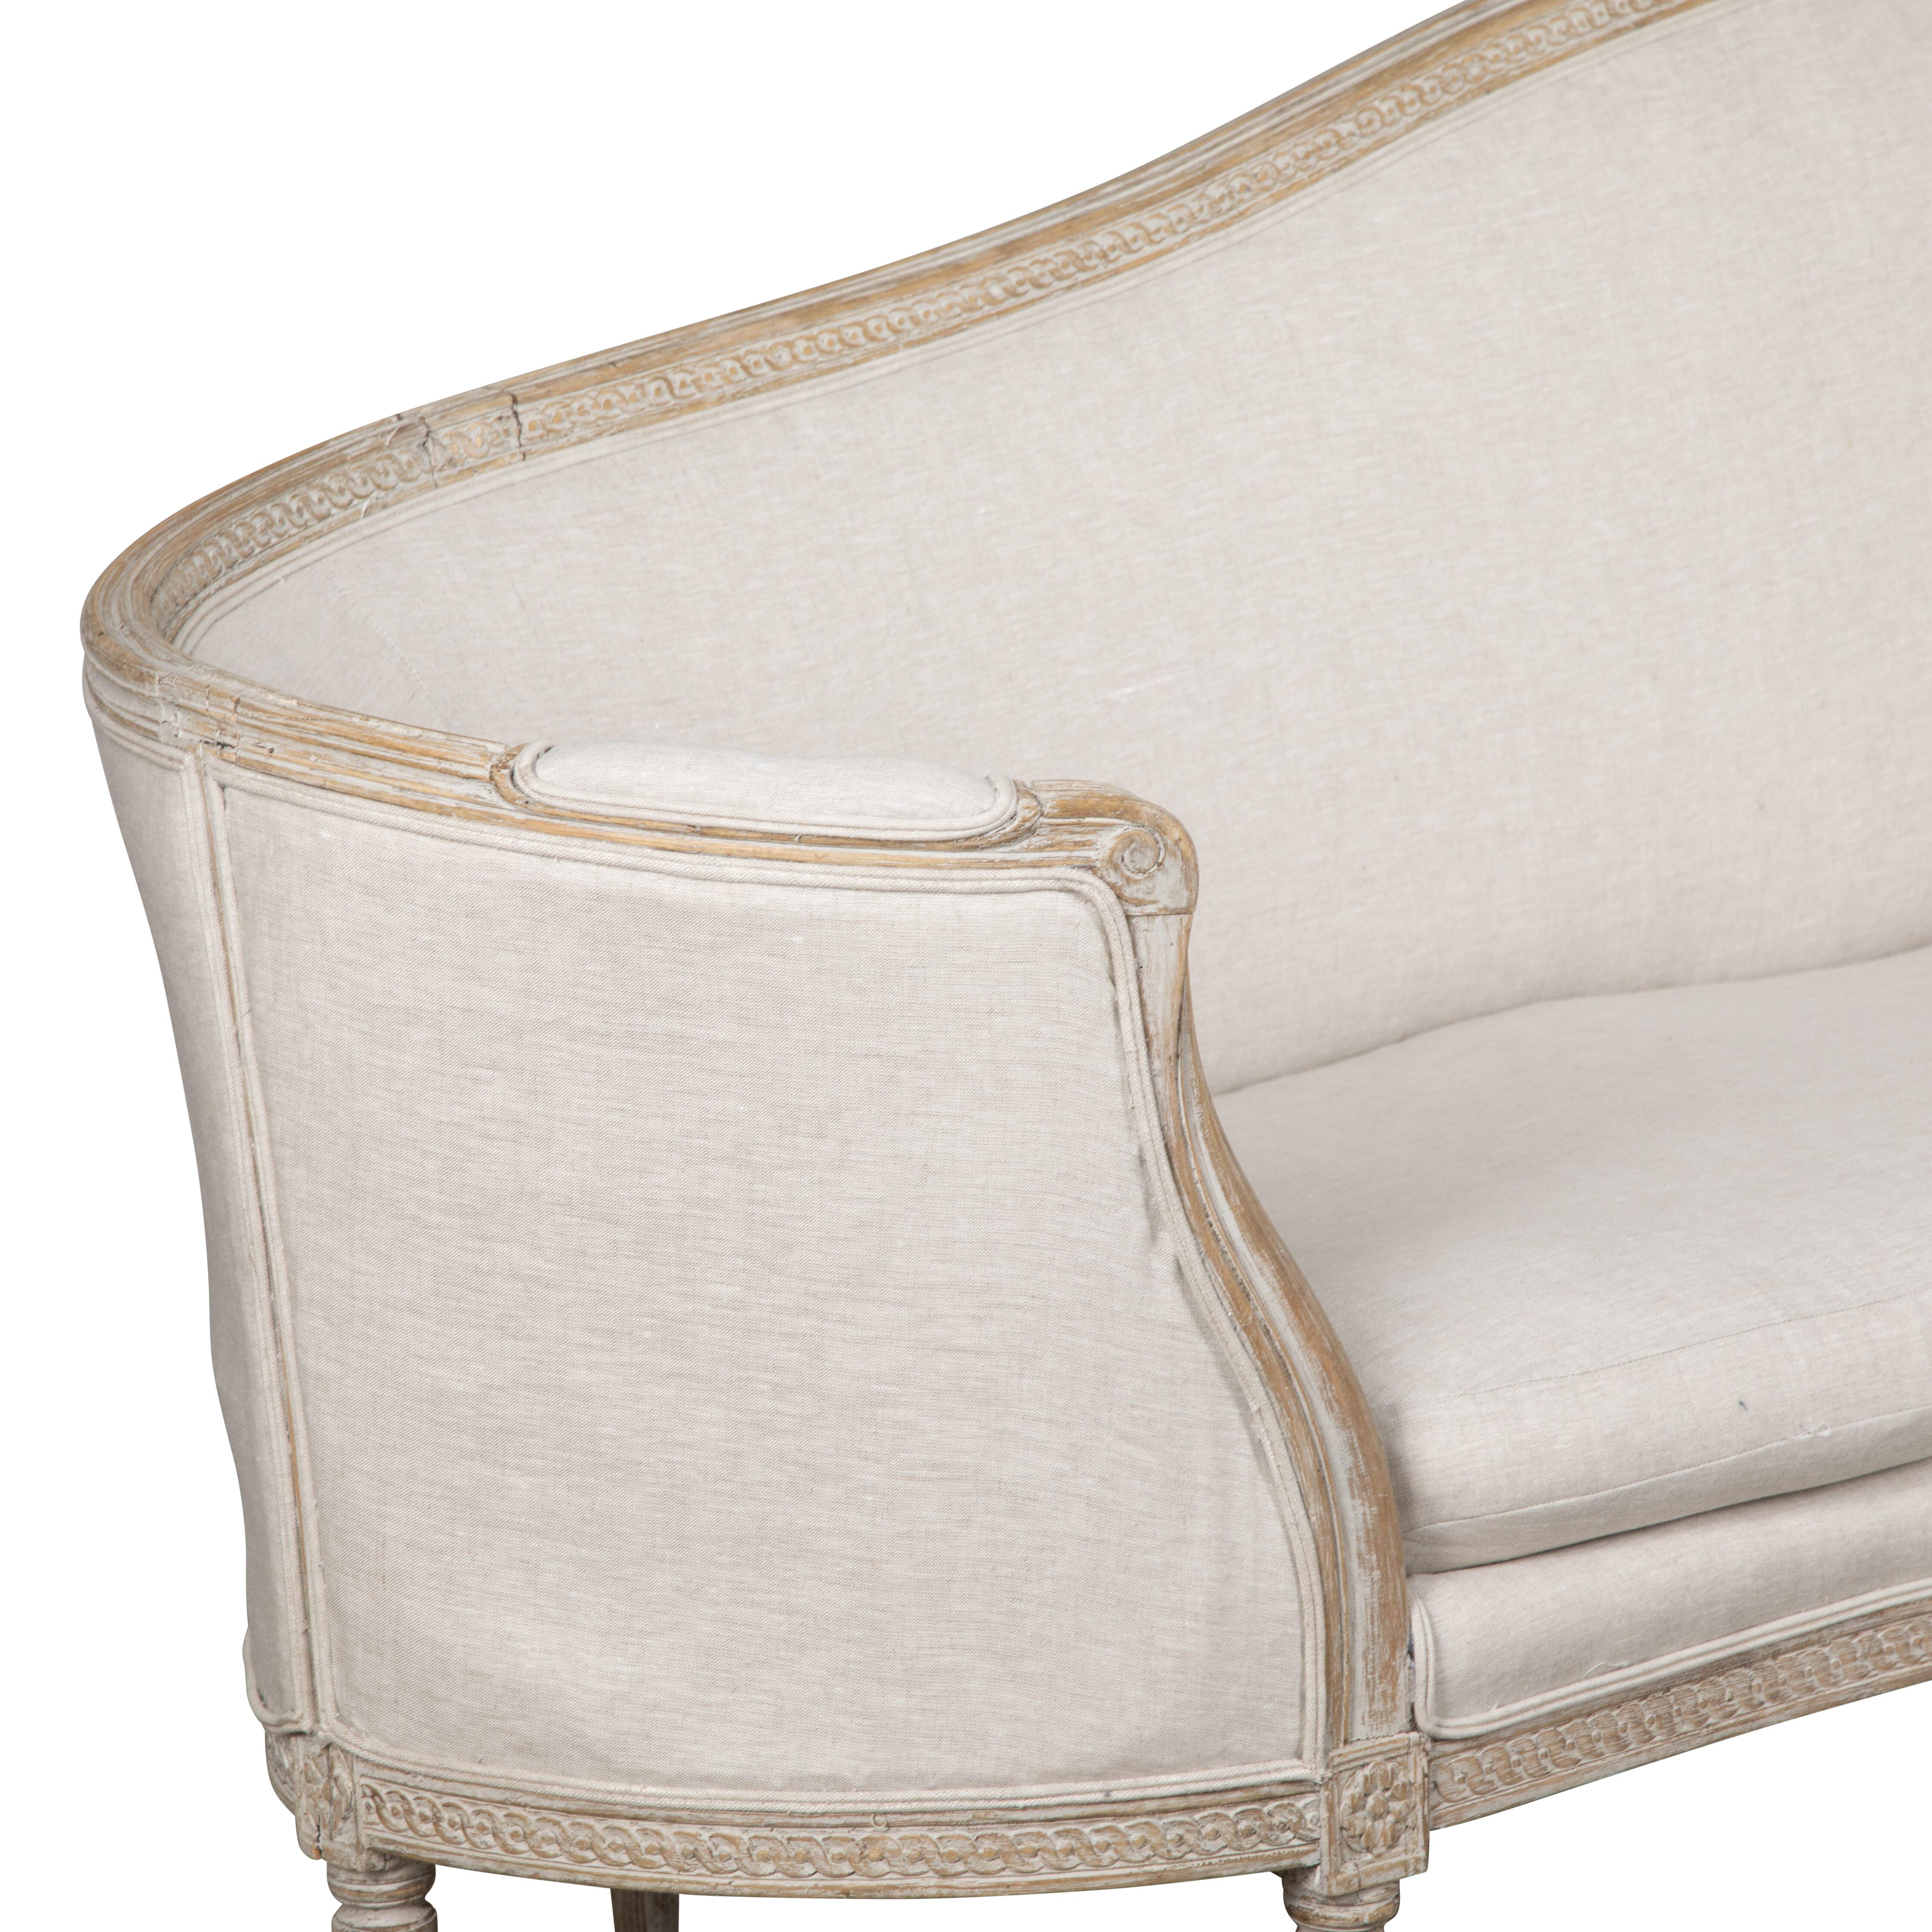 Außergewöhnliche Qualität Stockholm voller Länge gebogen Ende Wanne Sofa.
Dies ist ein ungewöhnlicher Fund aus dem 18. Jahrhundert. Neu gestrichen in sanftem Grau und neu gepolstert in Leinen. 